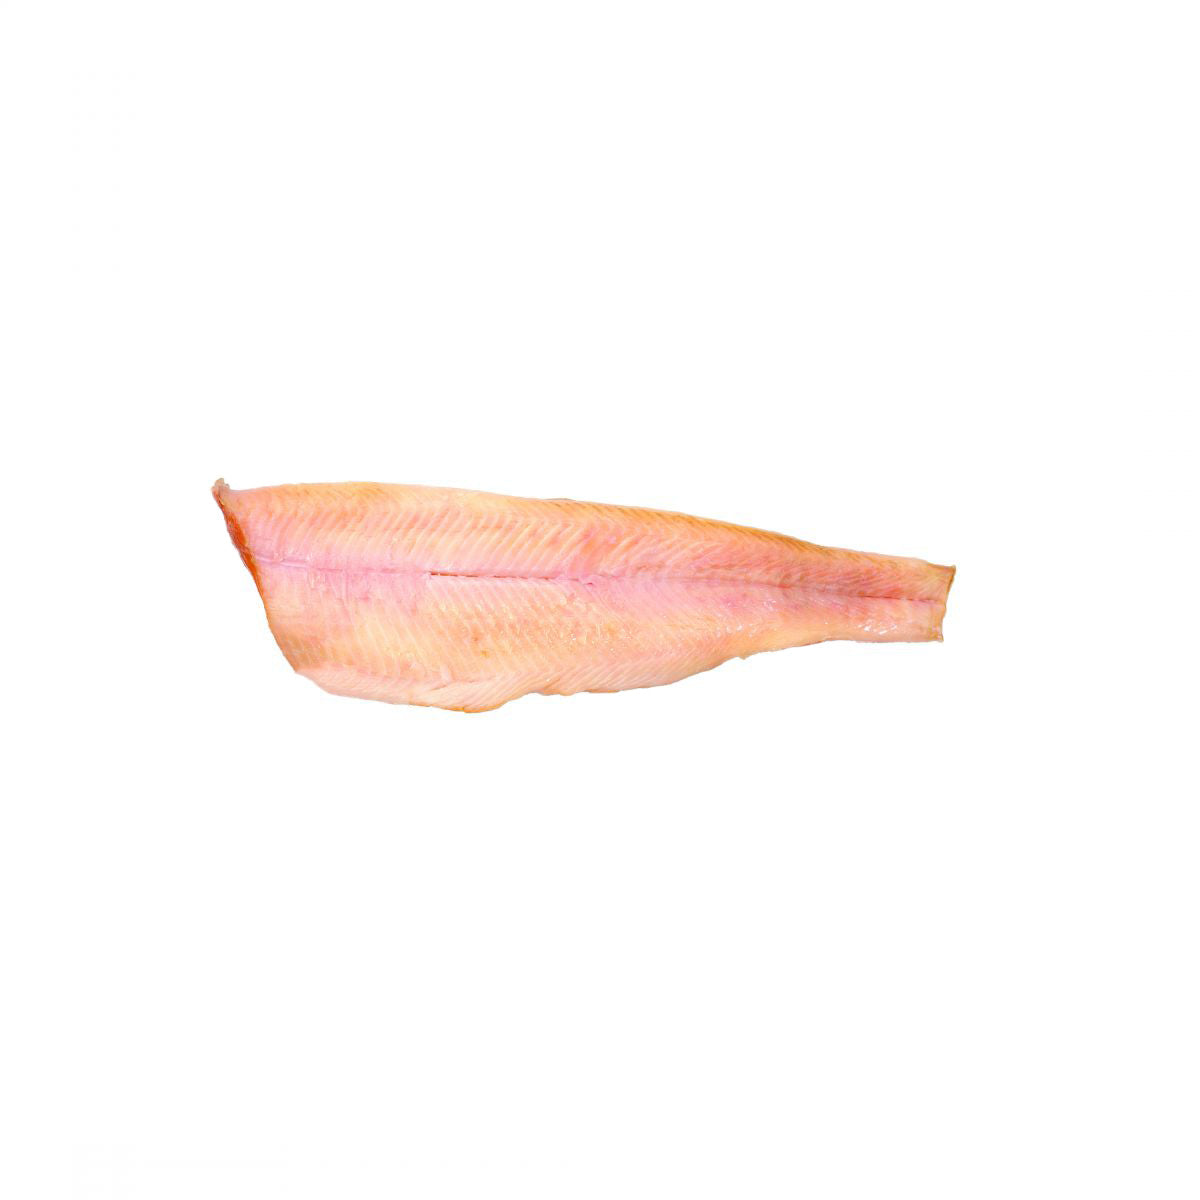 Acme Smoked Fish Smoked Trout Filets 5 OZ